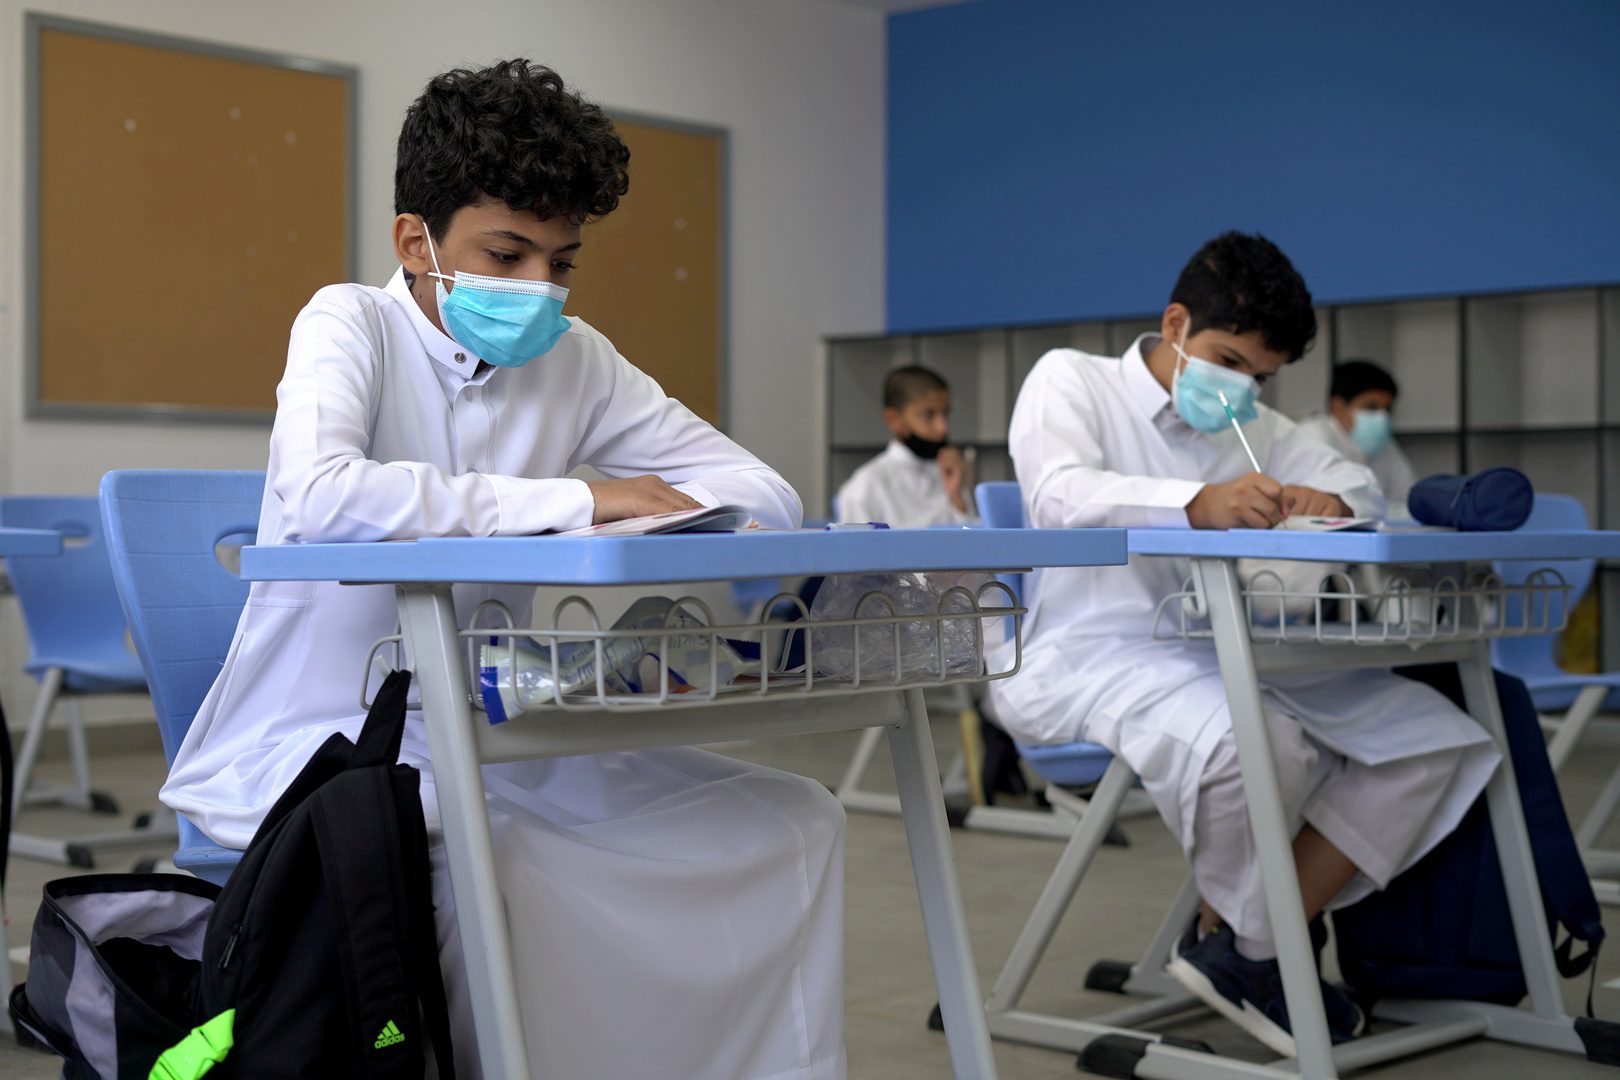 مقالة  : ما هو موعد آخر إجازة مطولة للطلاب خلال الفصل الدراسي الجاري؟ وزارة التعليم السعودية توضح